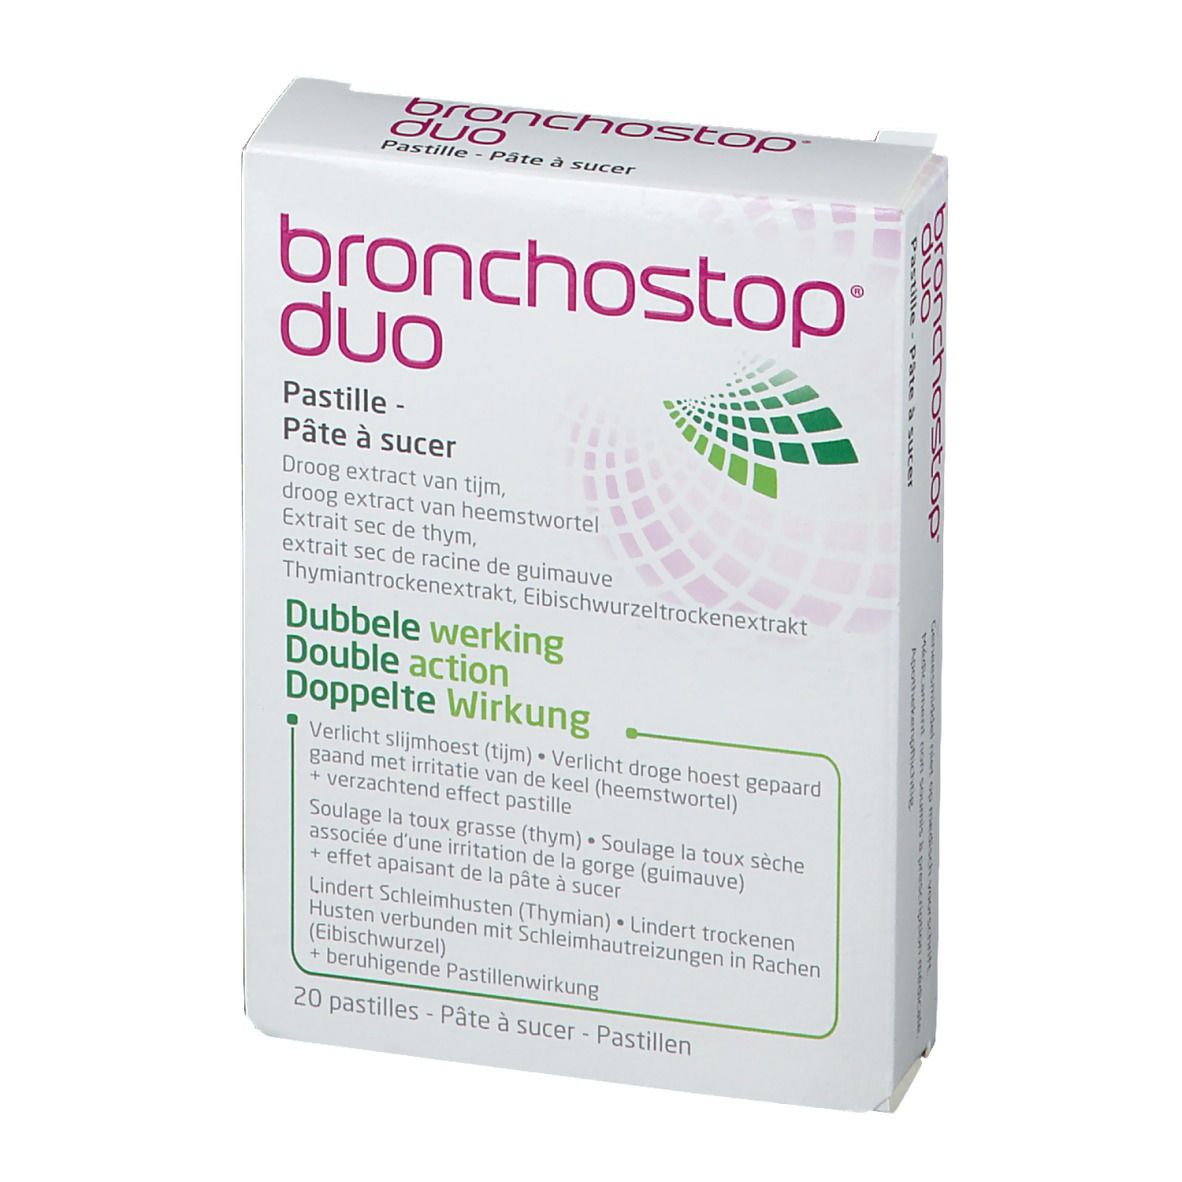 Bronchostop Duo